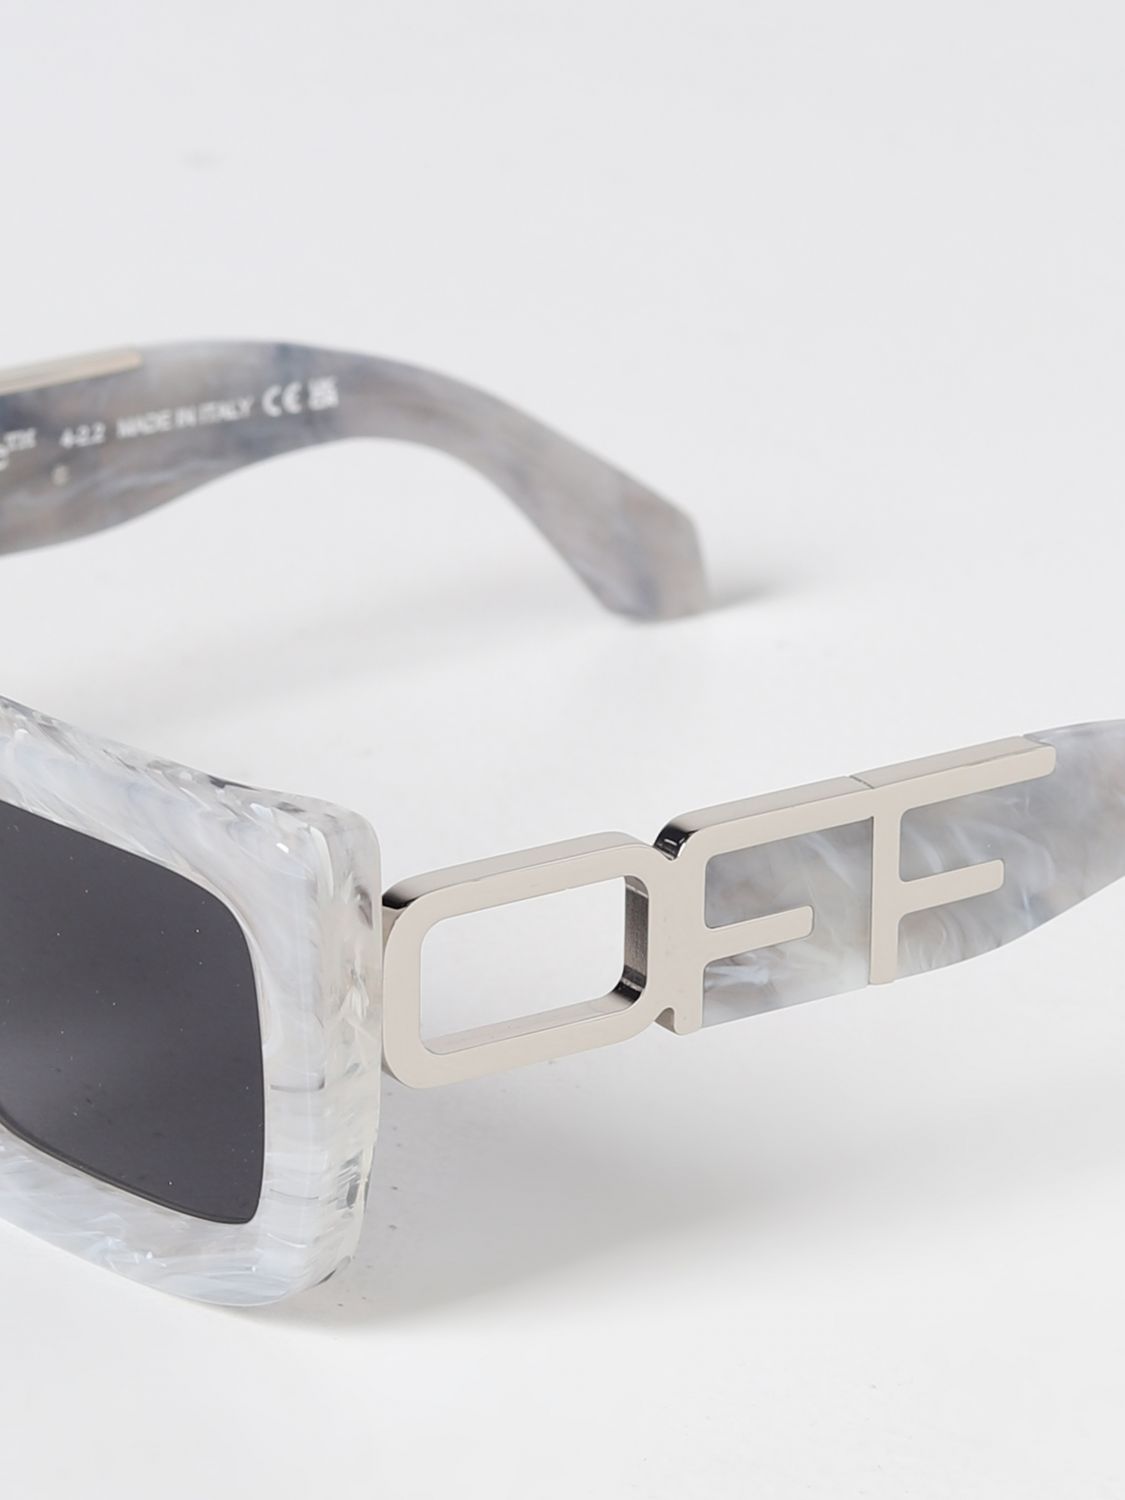 OFF-WHITE: Boston sunglasses in acetate - White  Off-White sunglasses  OERI073S23PLA001 online at